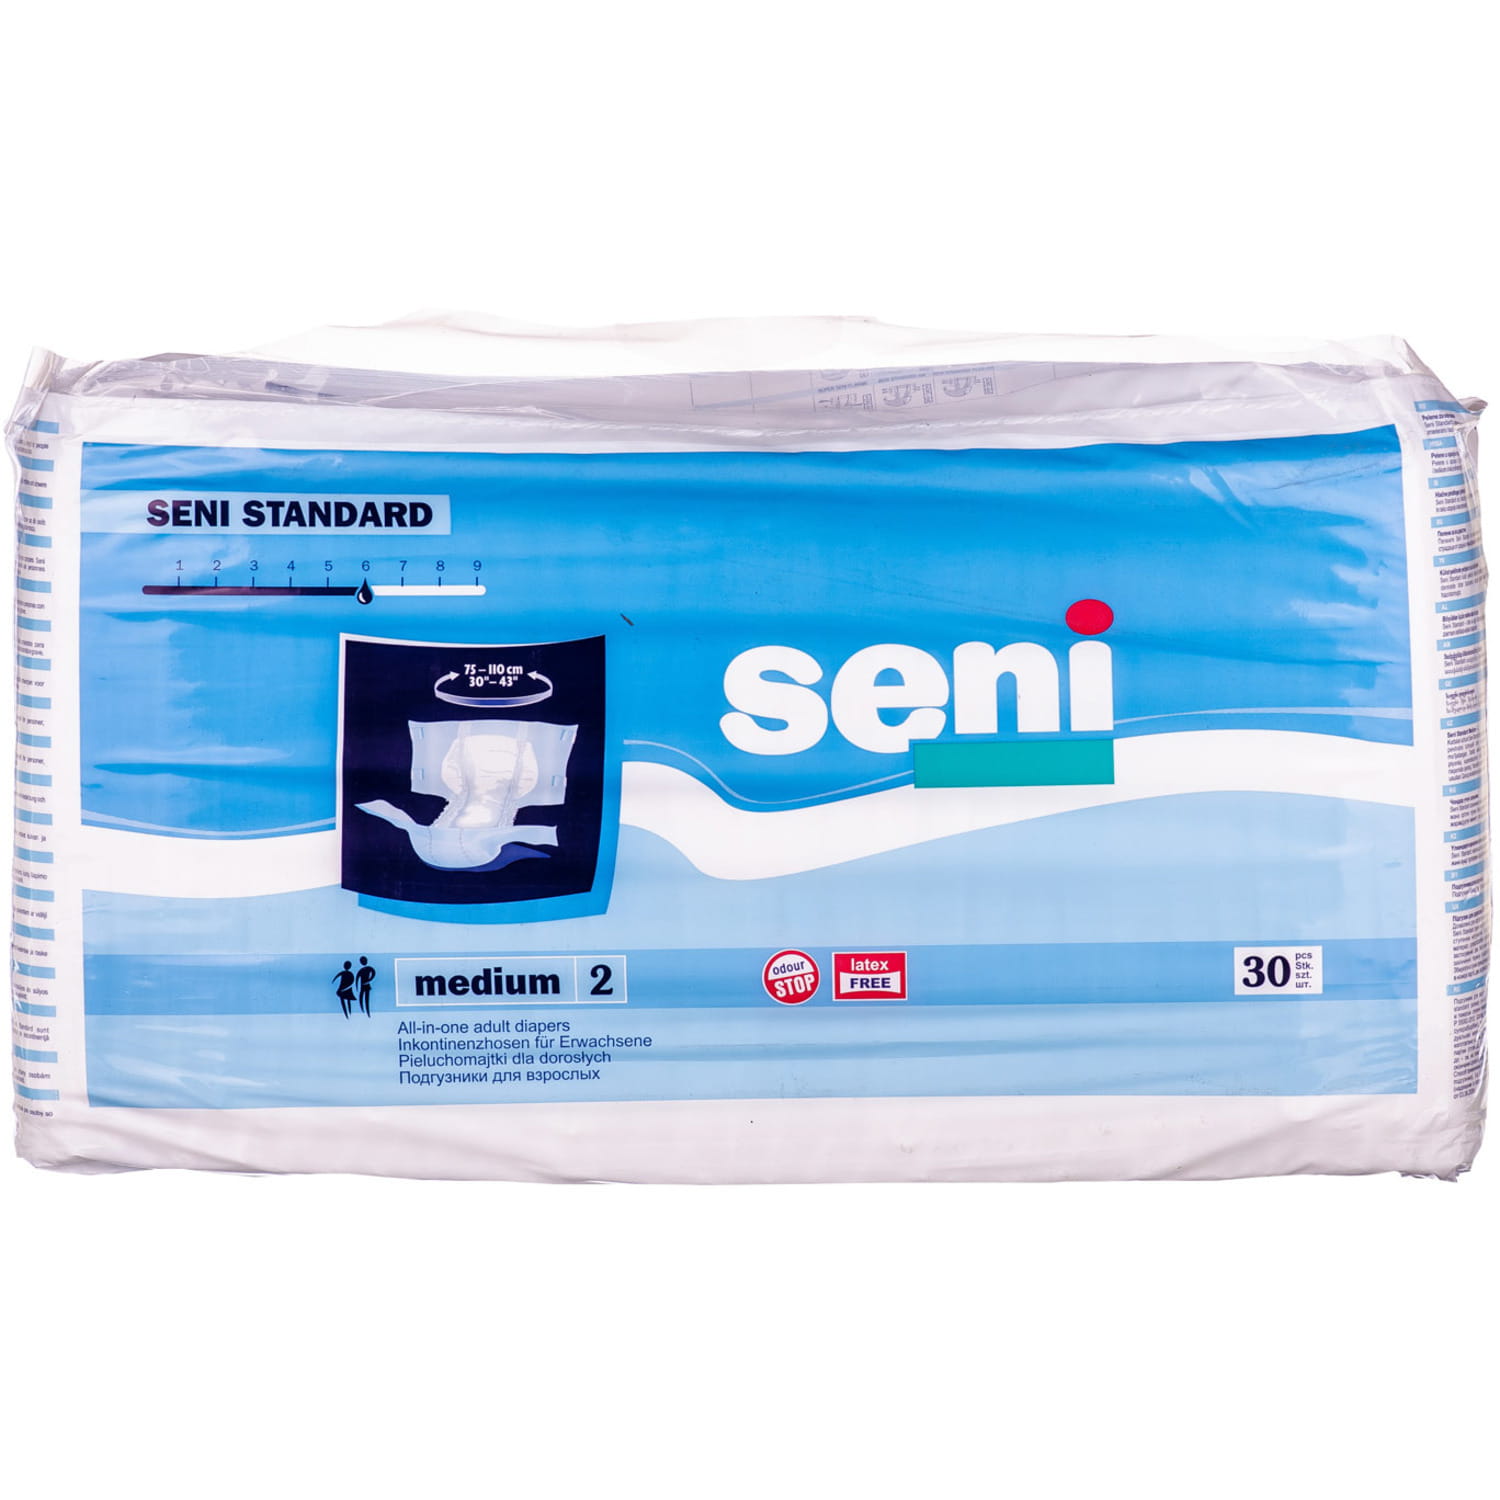 Подгузники взрослых seni medium. Пеленки Seni стандарт Медиум 2. Подгузники для взрослых Seni Standard Air small по 30 шт.